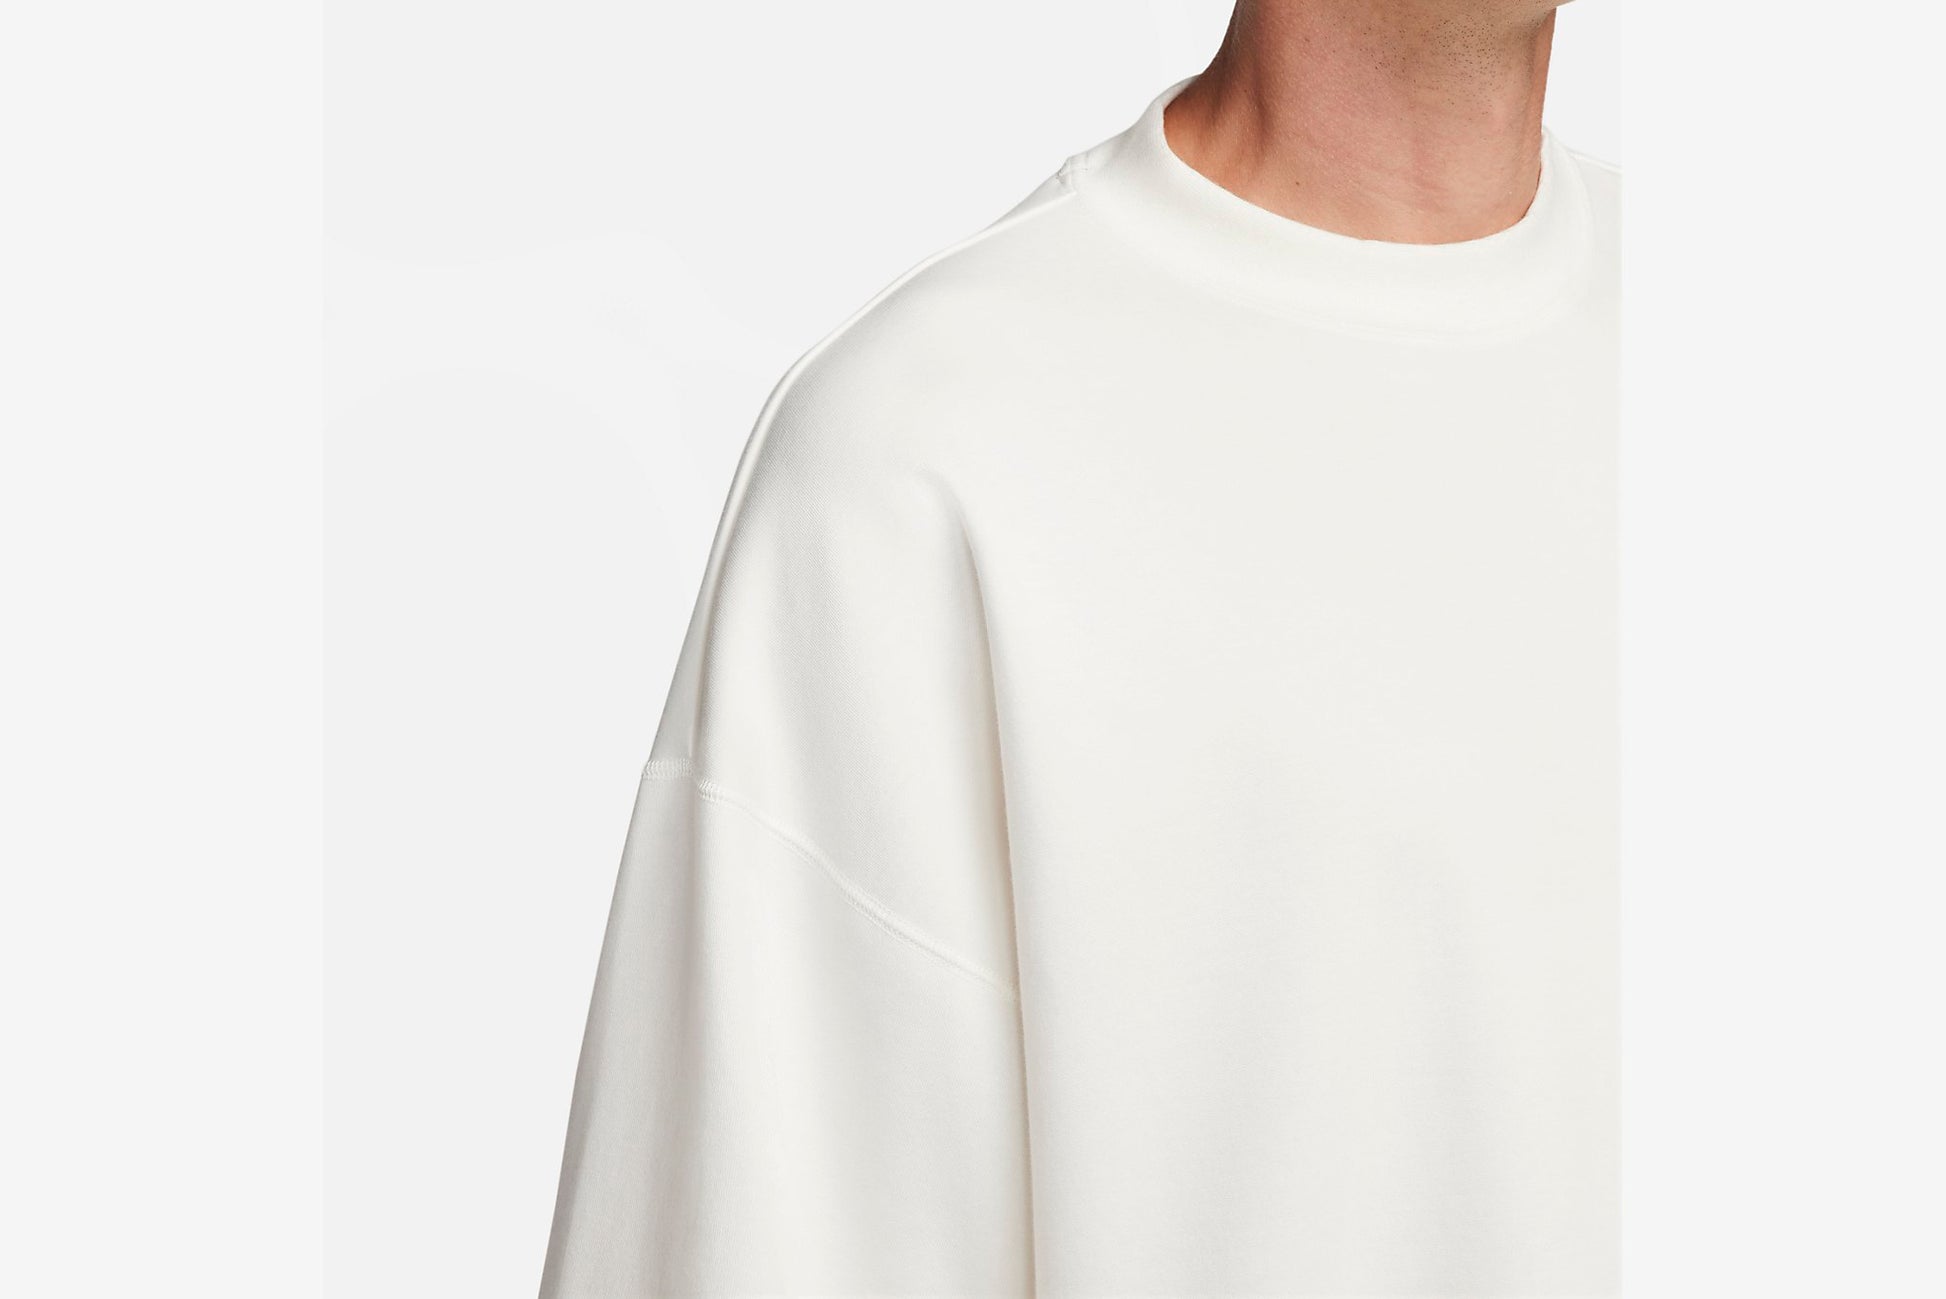 Nike Sportswear Tech Fleece Reimagined Men's Oversized Short-Sleeve Sweatshirt